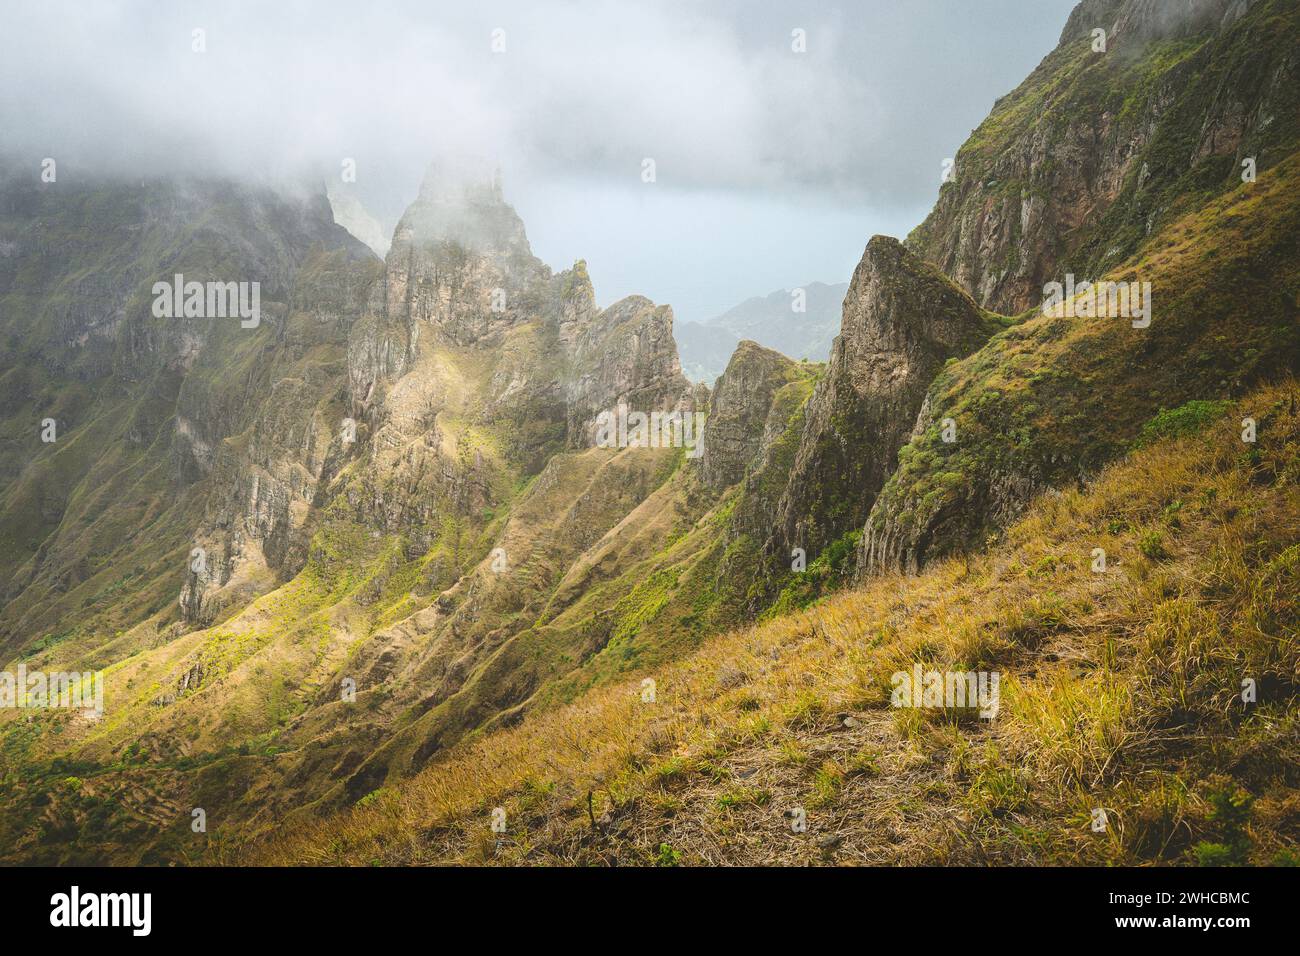 Impressionnante chaîne de montagnes accidentée envahie d'herbe verdoyante. XO-XO Valley. Île de Santo Antao, Cap-Vert Cabo Verde. Orientation verticale. Banque D'Images